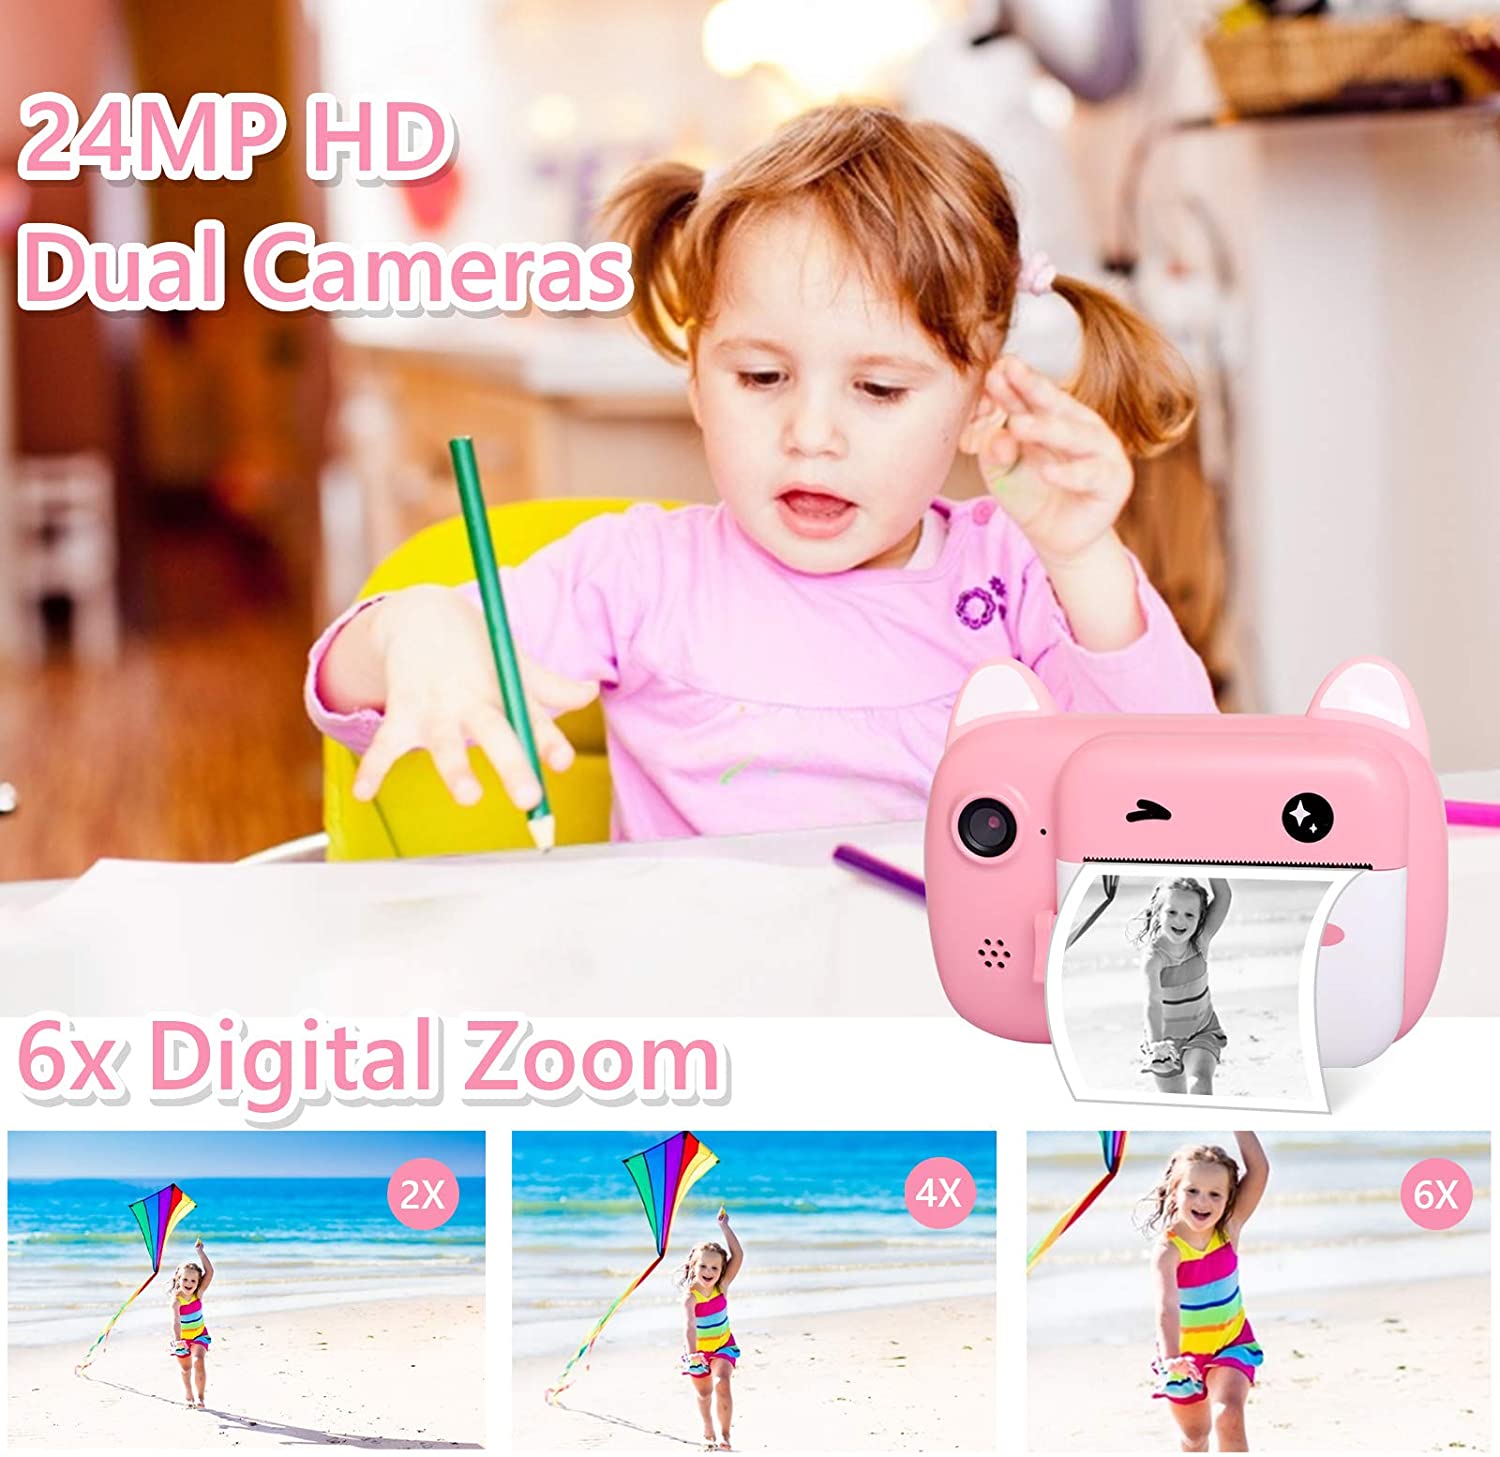 Kids Cameras - Digital & Instant Cameras